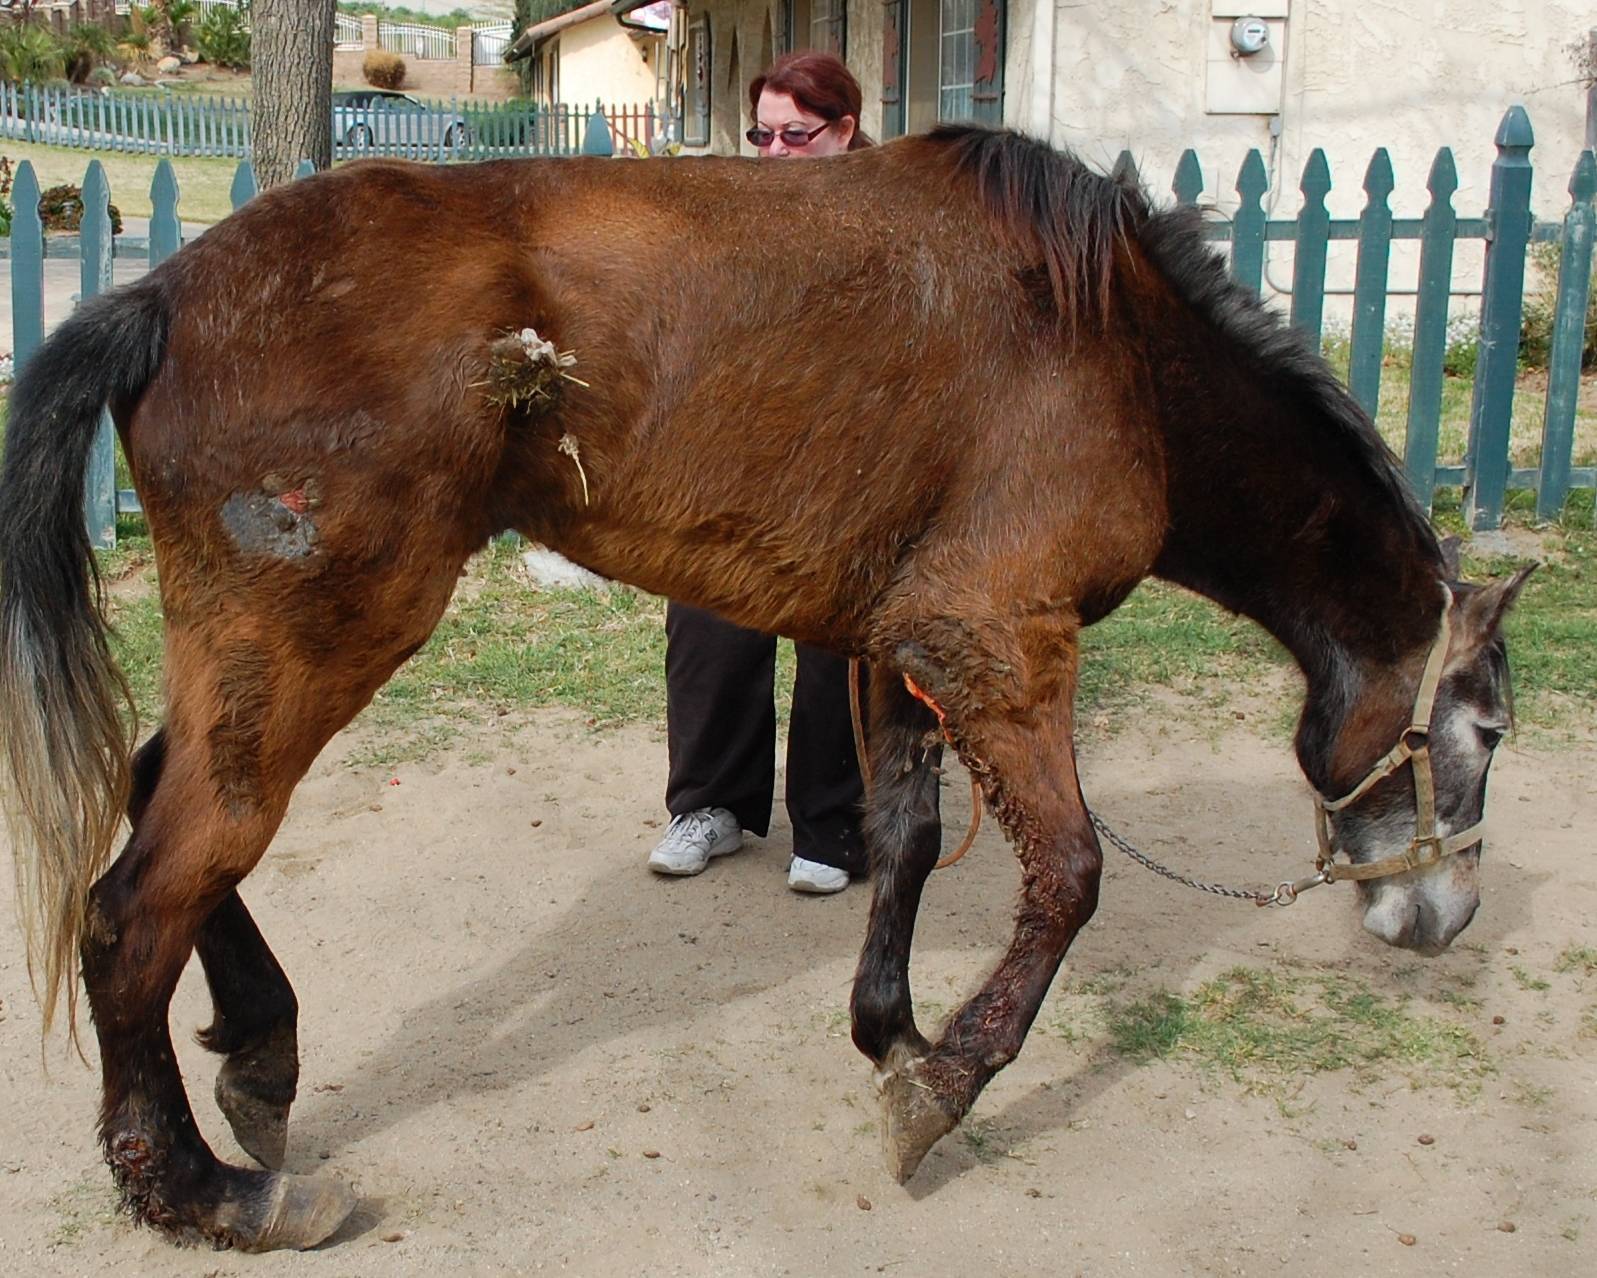 Болезни лошадей: основные симптомы, профилактика и лечение основных инфекционных заболеваний (110 фото)